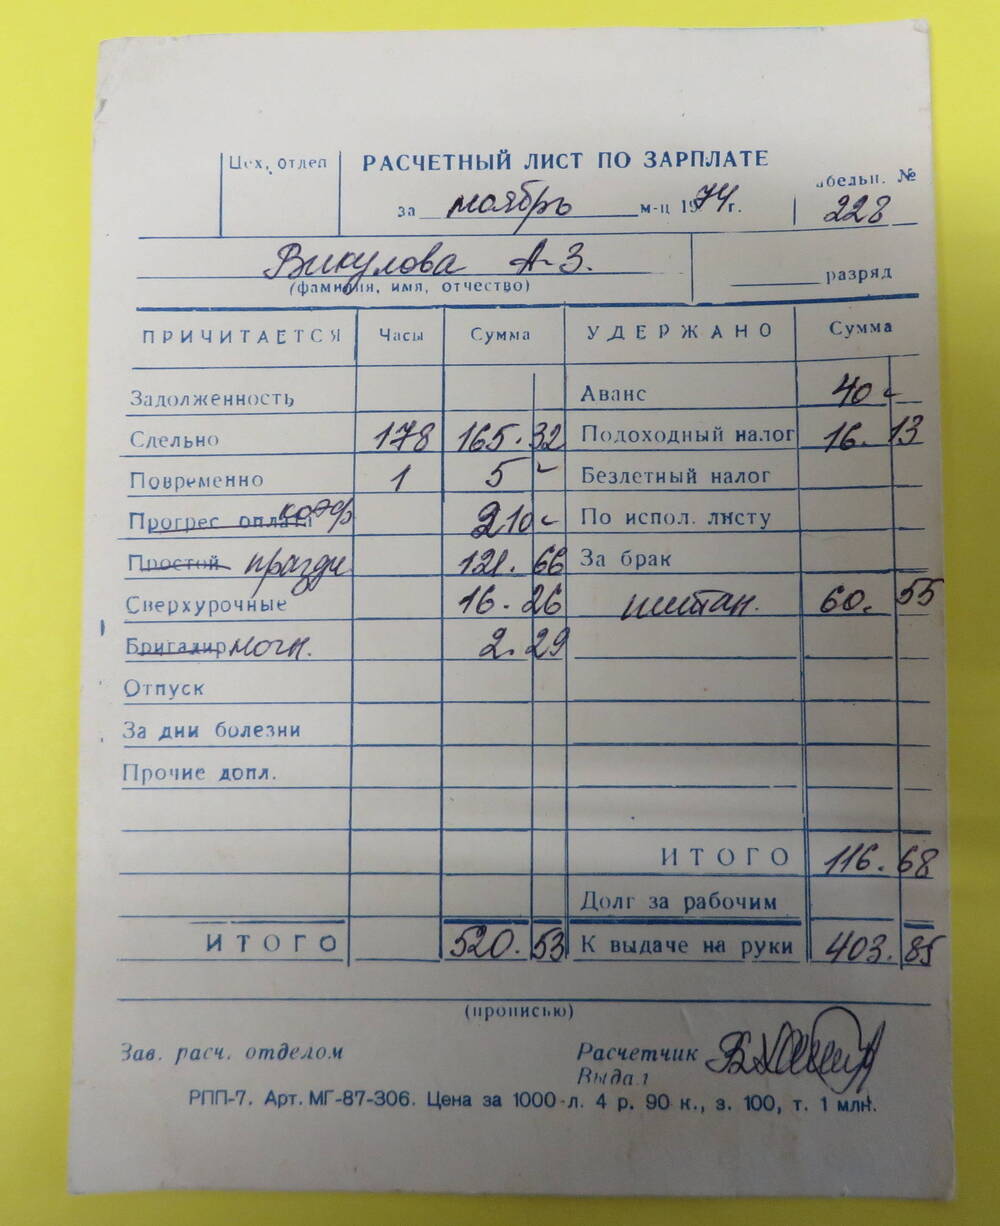 Расчётный лист по зарплате за ноябрь 1974 год Викуловой А.З.